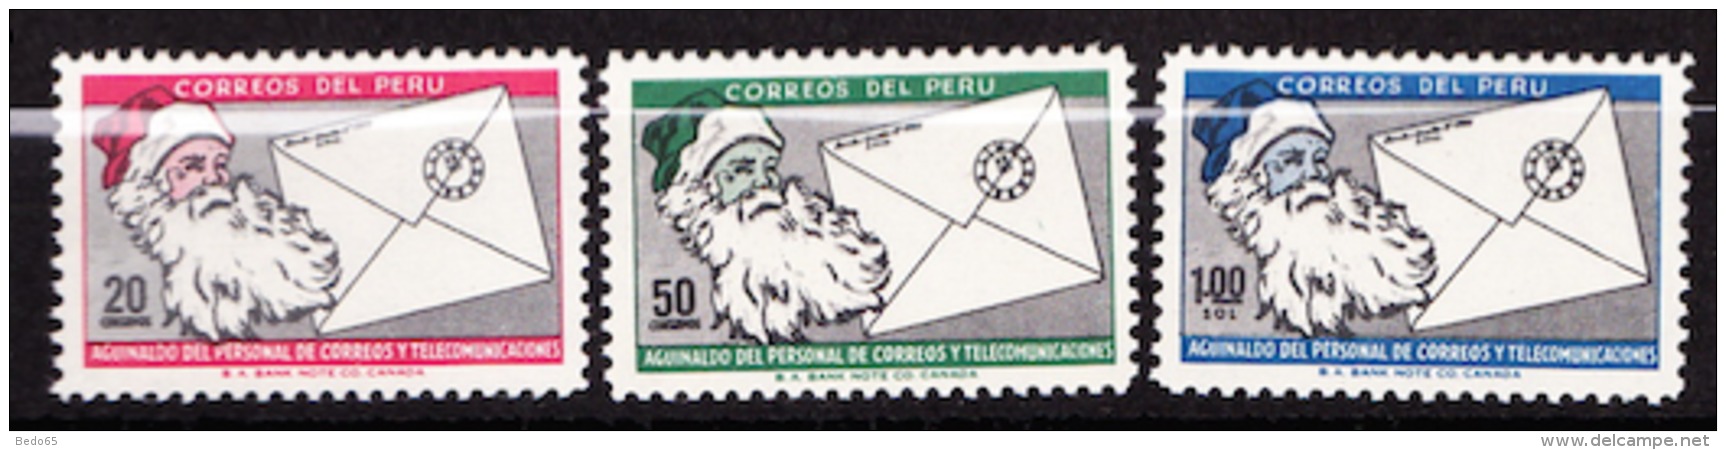 PEROU  N° 469 / 470 / 471 NEUF** LUXE  SANS CHARNIERE / MNH - Peru